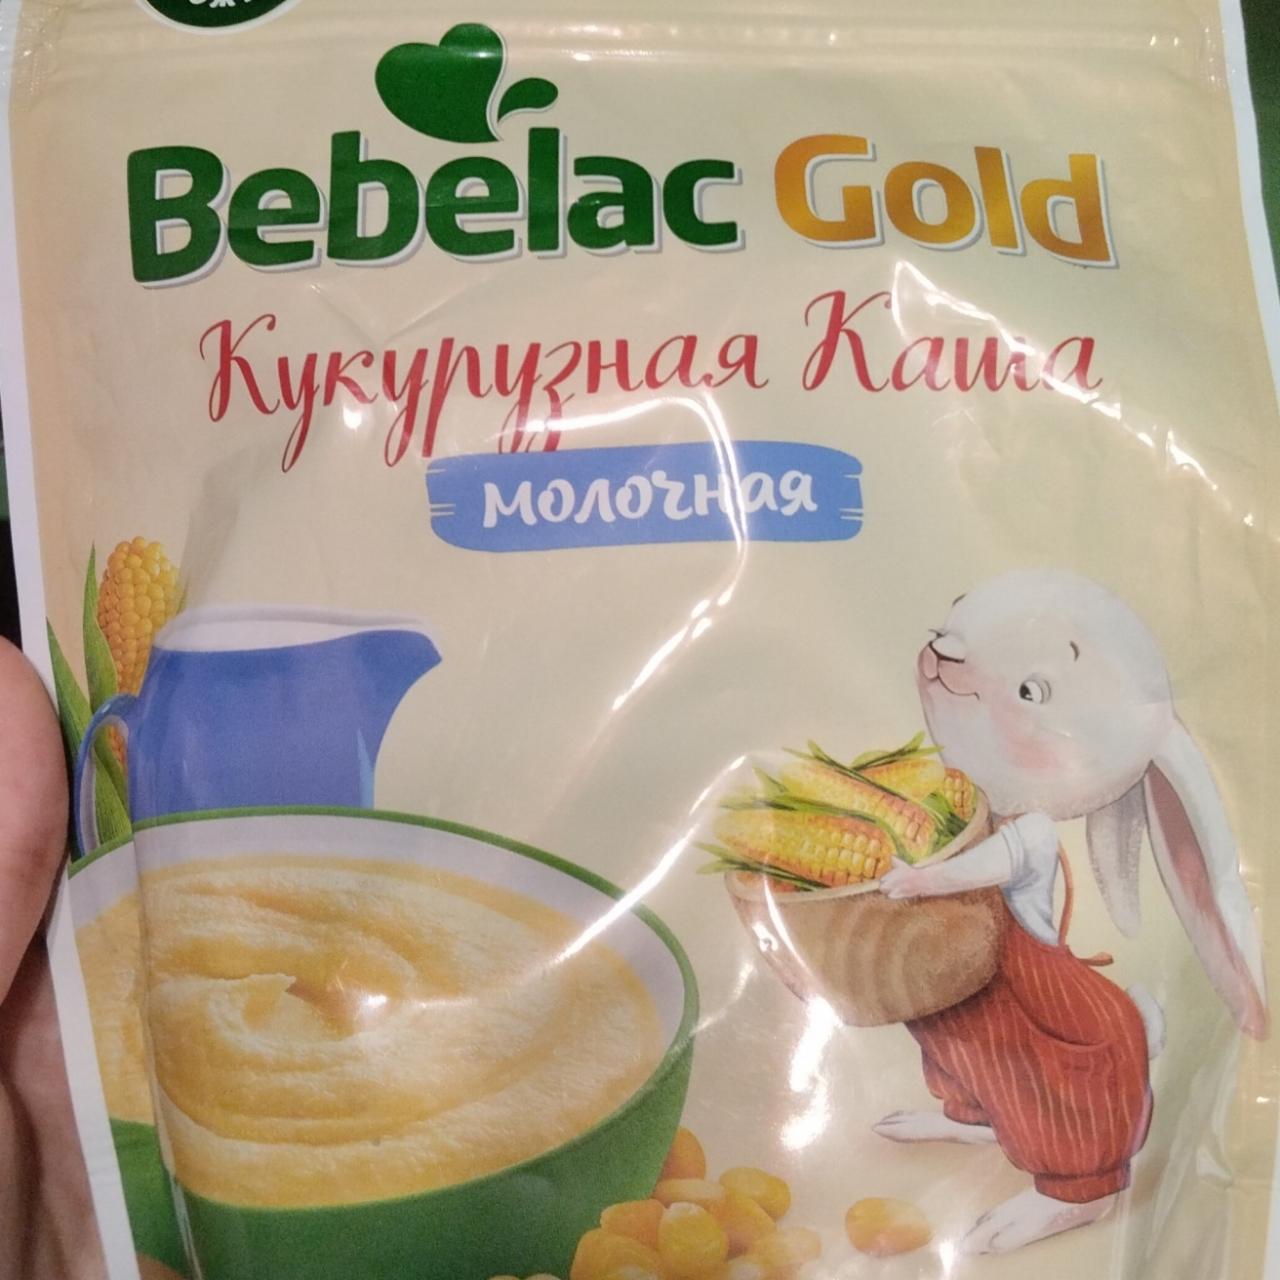 Фото - Кукурузная каша молочная Bebelac Gold